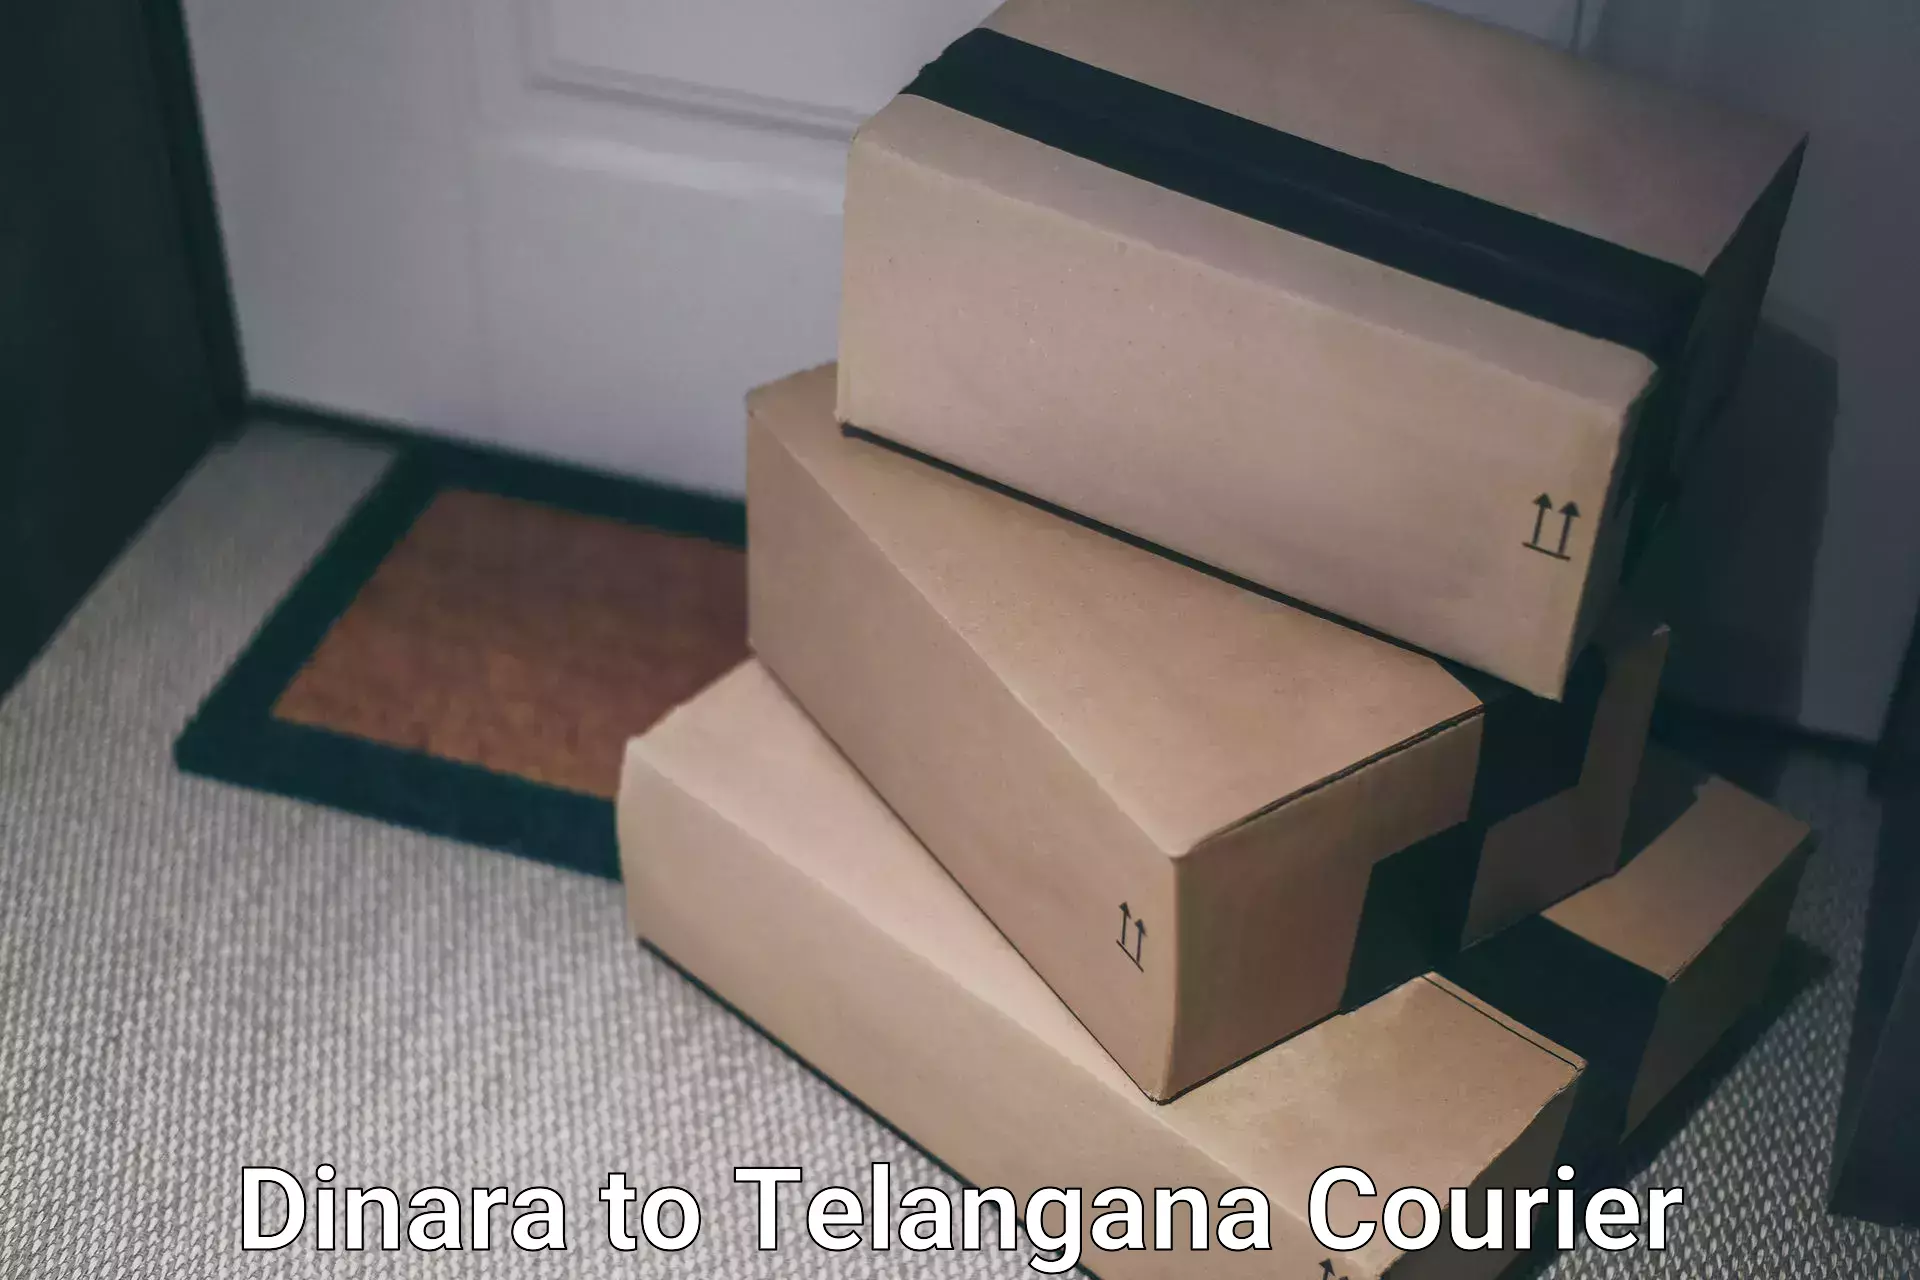 Reliable delivery network Dinara to Tadoor